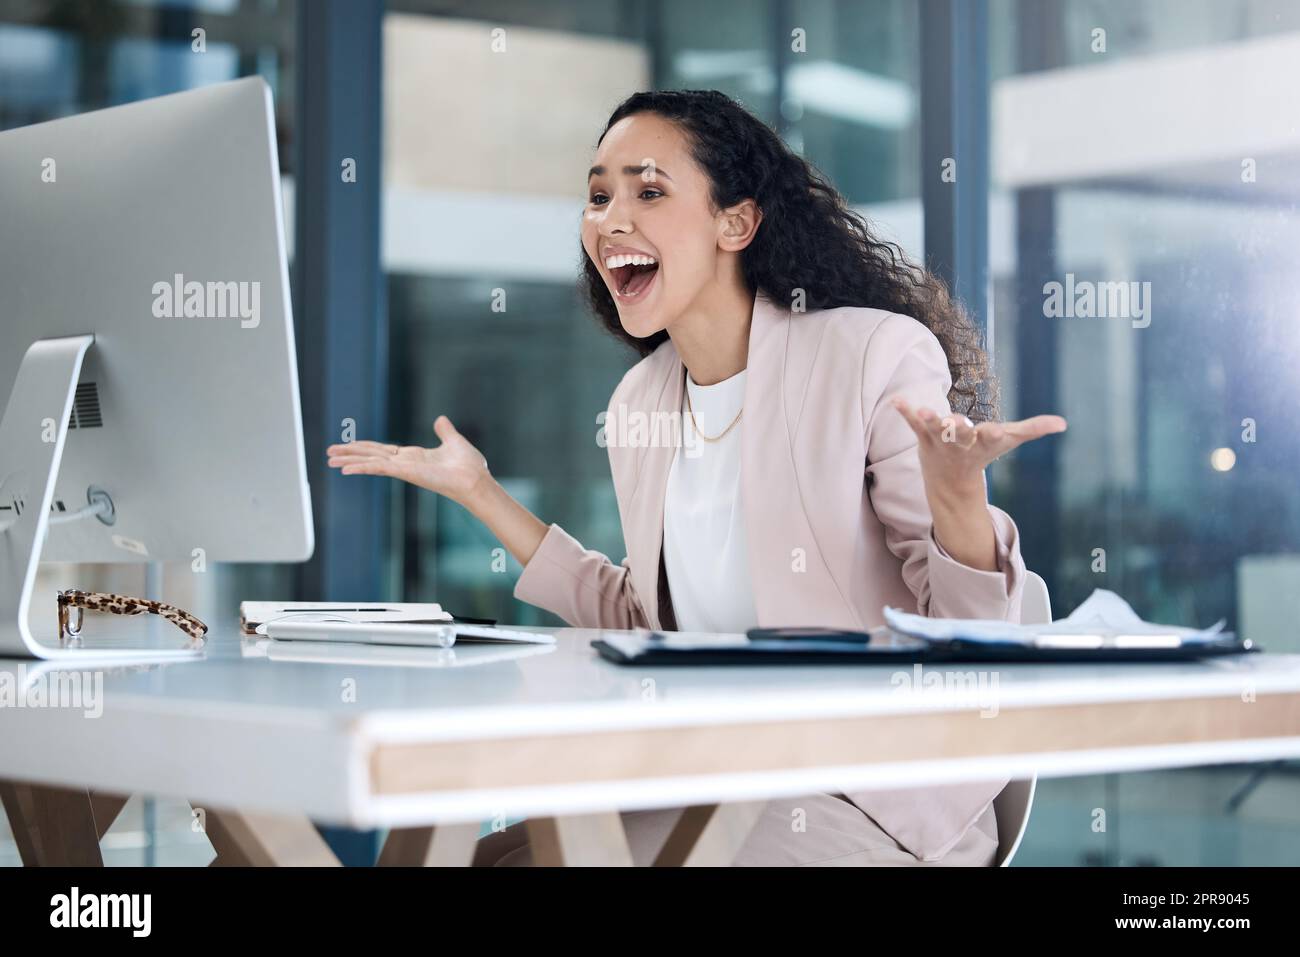 Jeune femme d'affaires heureuse de race mixte qui a l'air choqué et étonné d'utiliser un ordinateur de bureau dans un bureau. Un homme d'affaires hispanique joyeux souriant faisant un geste de main tout en regardant un écran de pc au travail Banque D'Images